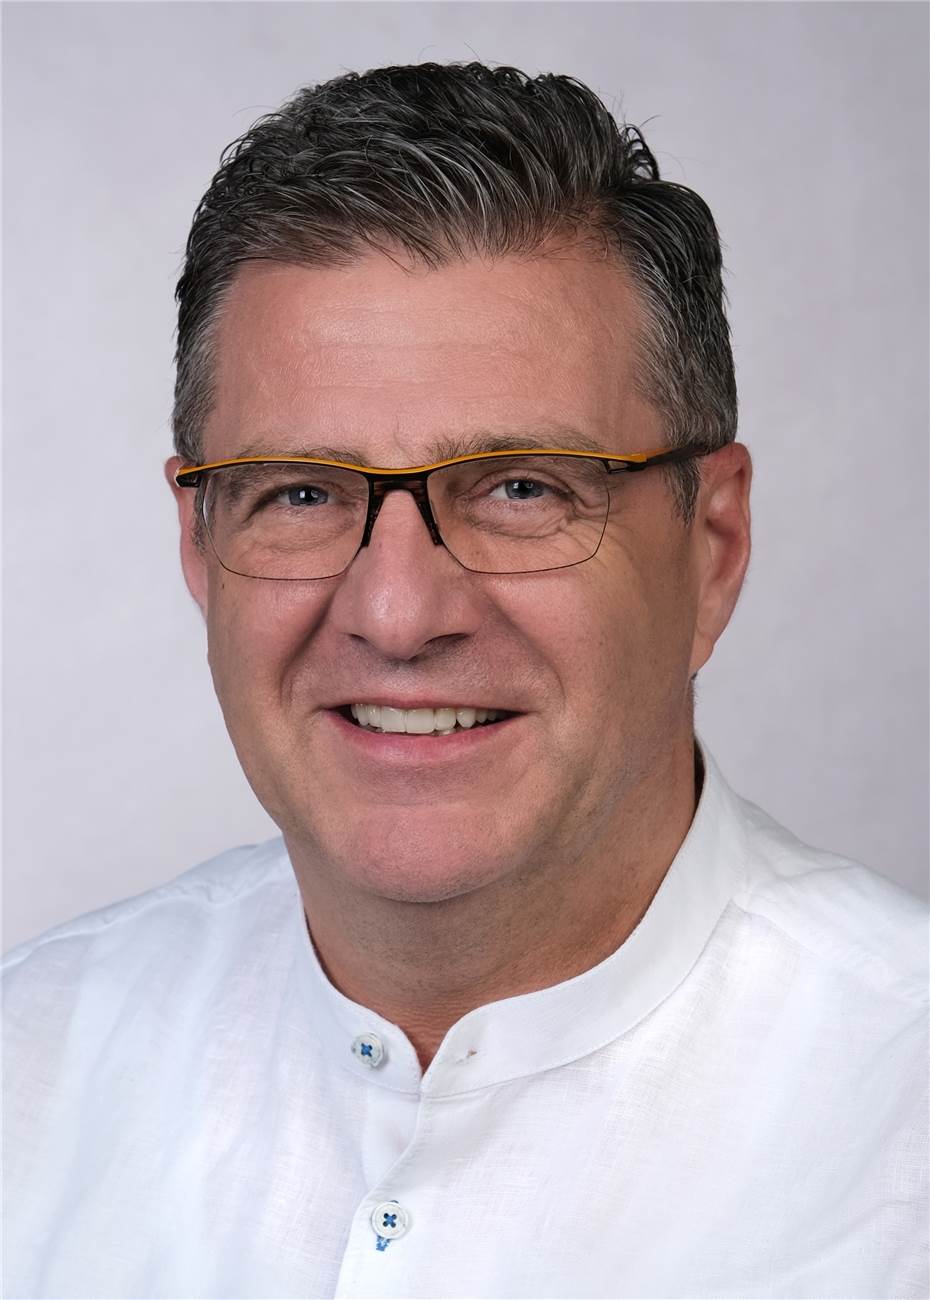 Jürgen Nett nach 365 Tagen
Amtszeit als 1. Vorsitzender